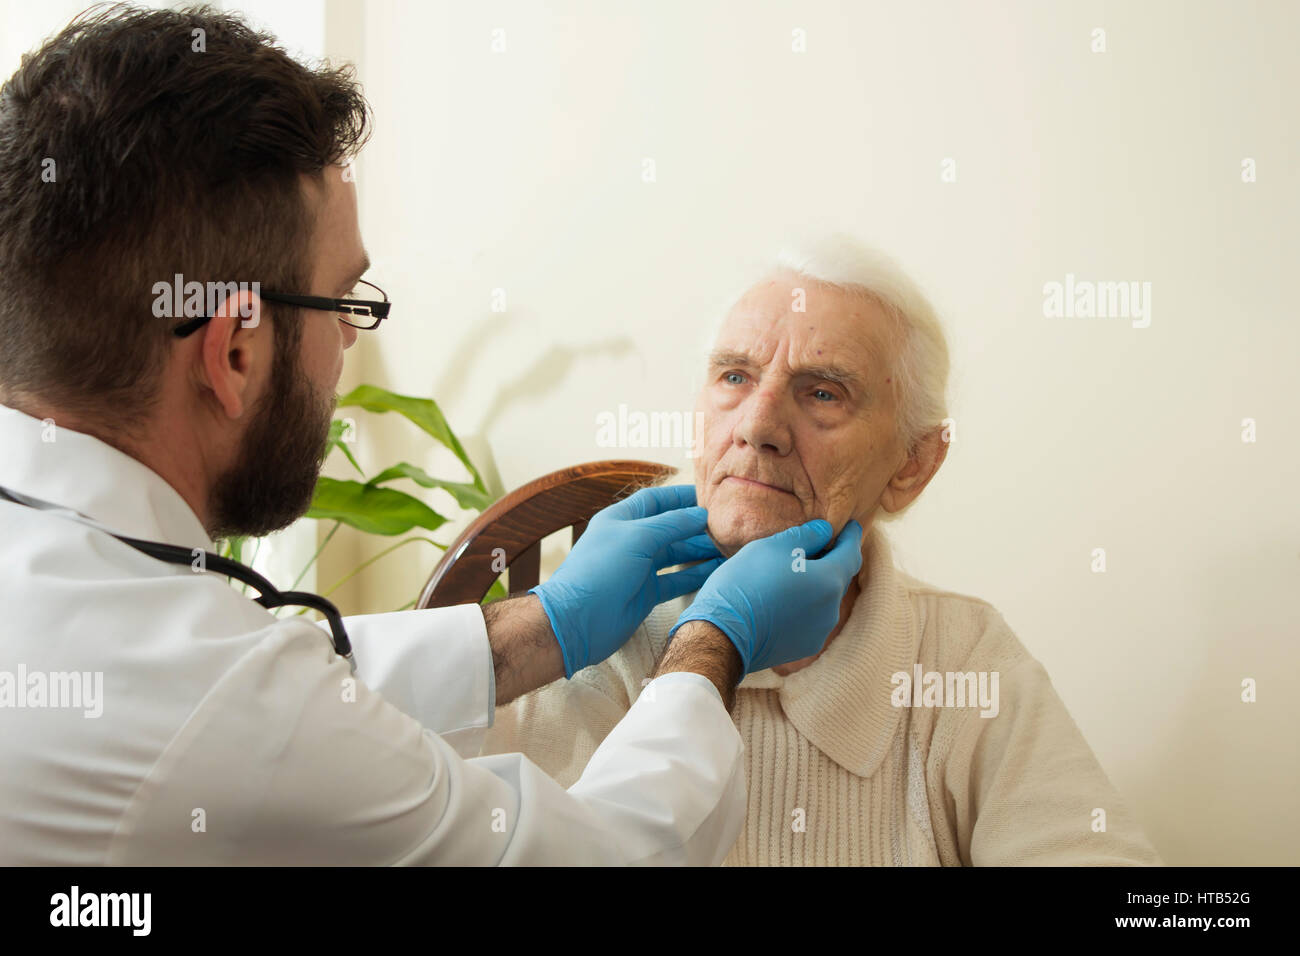 Der Arzt untersucht die Lymphknoten am Hals von einer alten Frau. Stockfoto